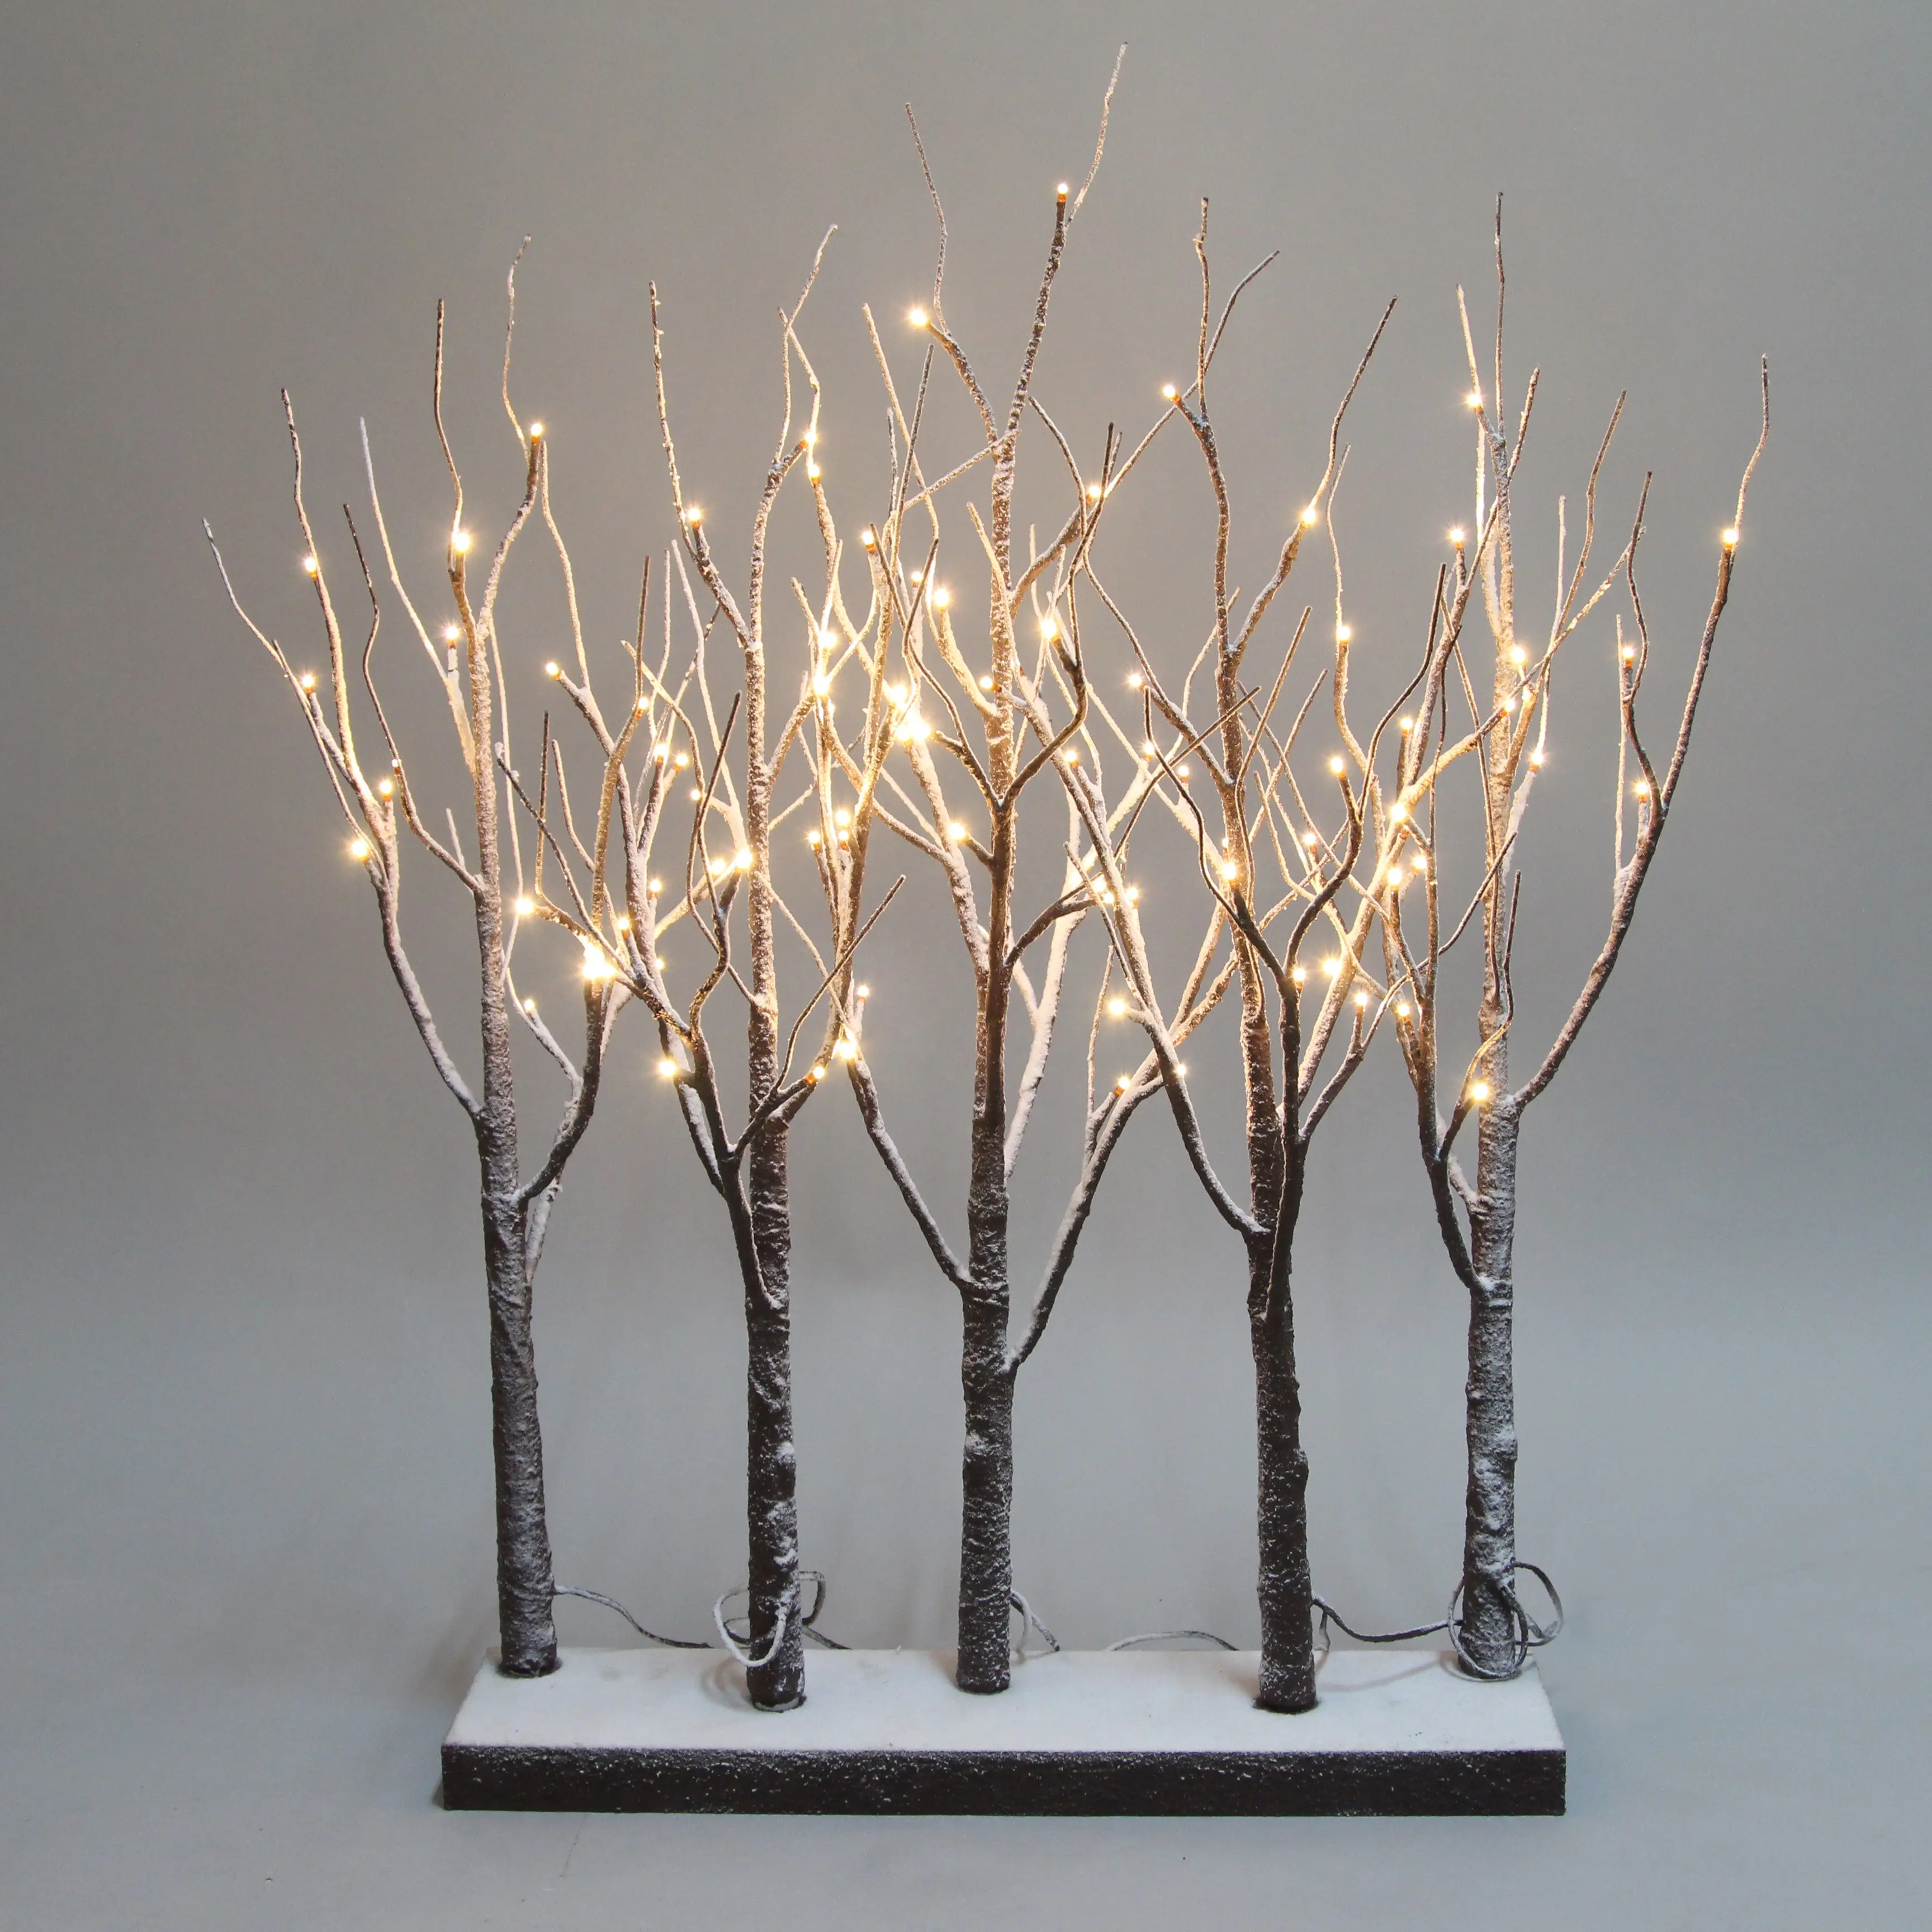 شجرة البتولا, LED مضاءة الثلجية براون شجرة البتولا تشكيلة أضواء السياج بستان 30IN